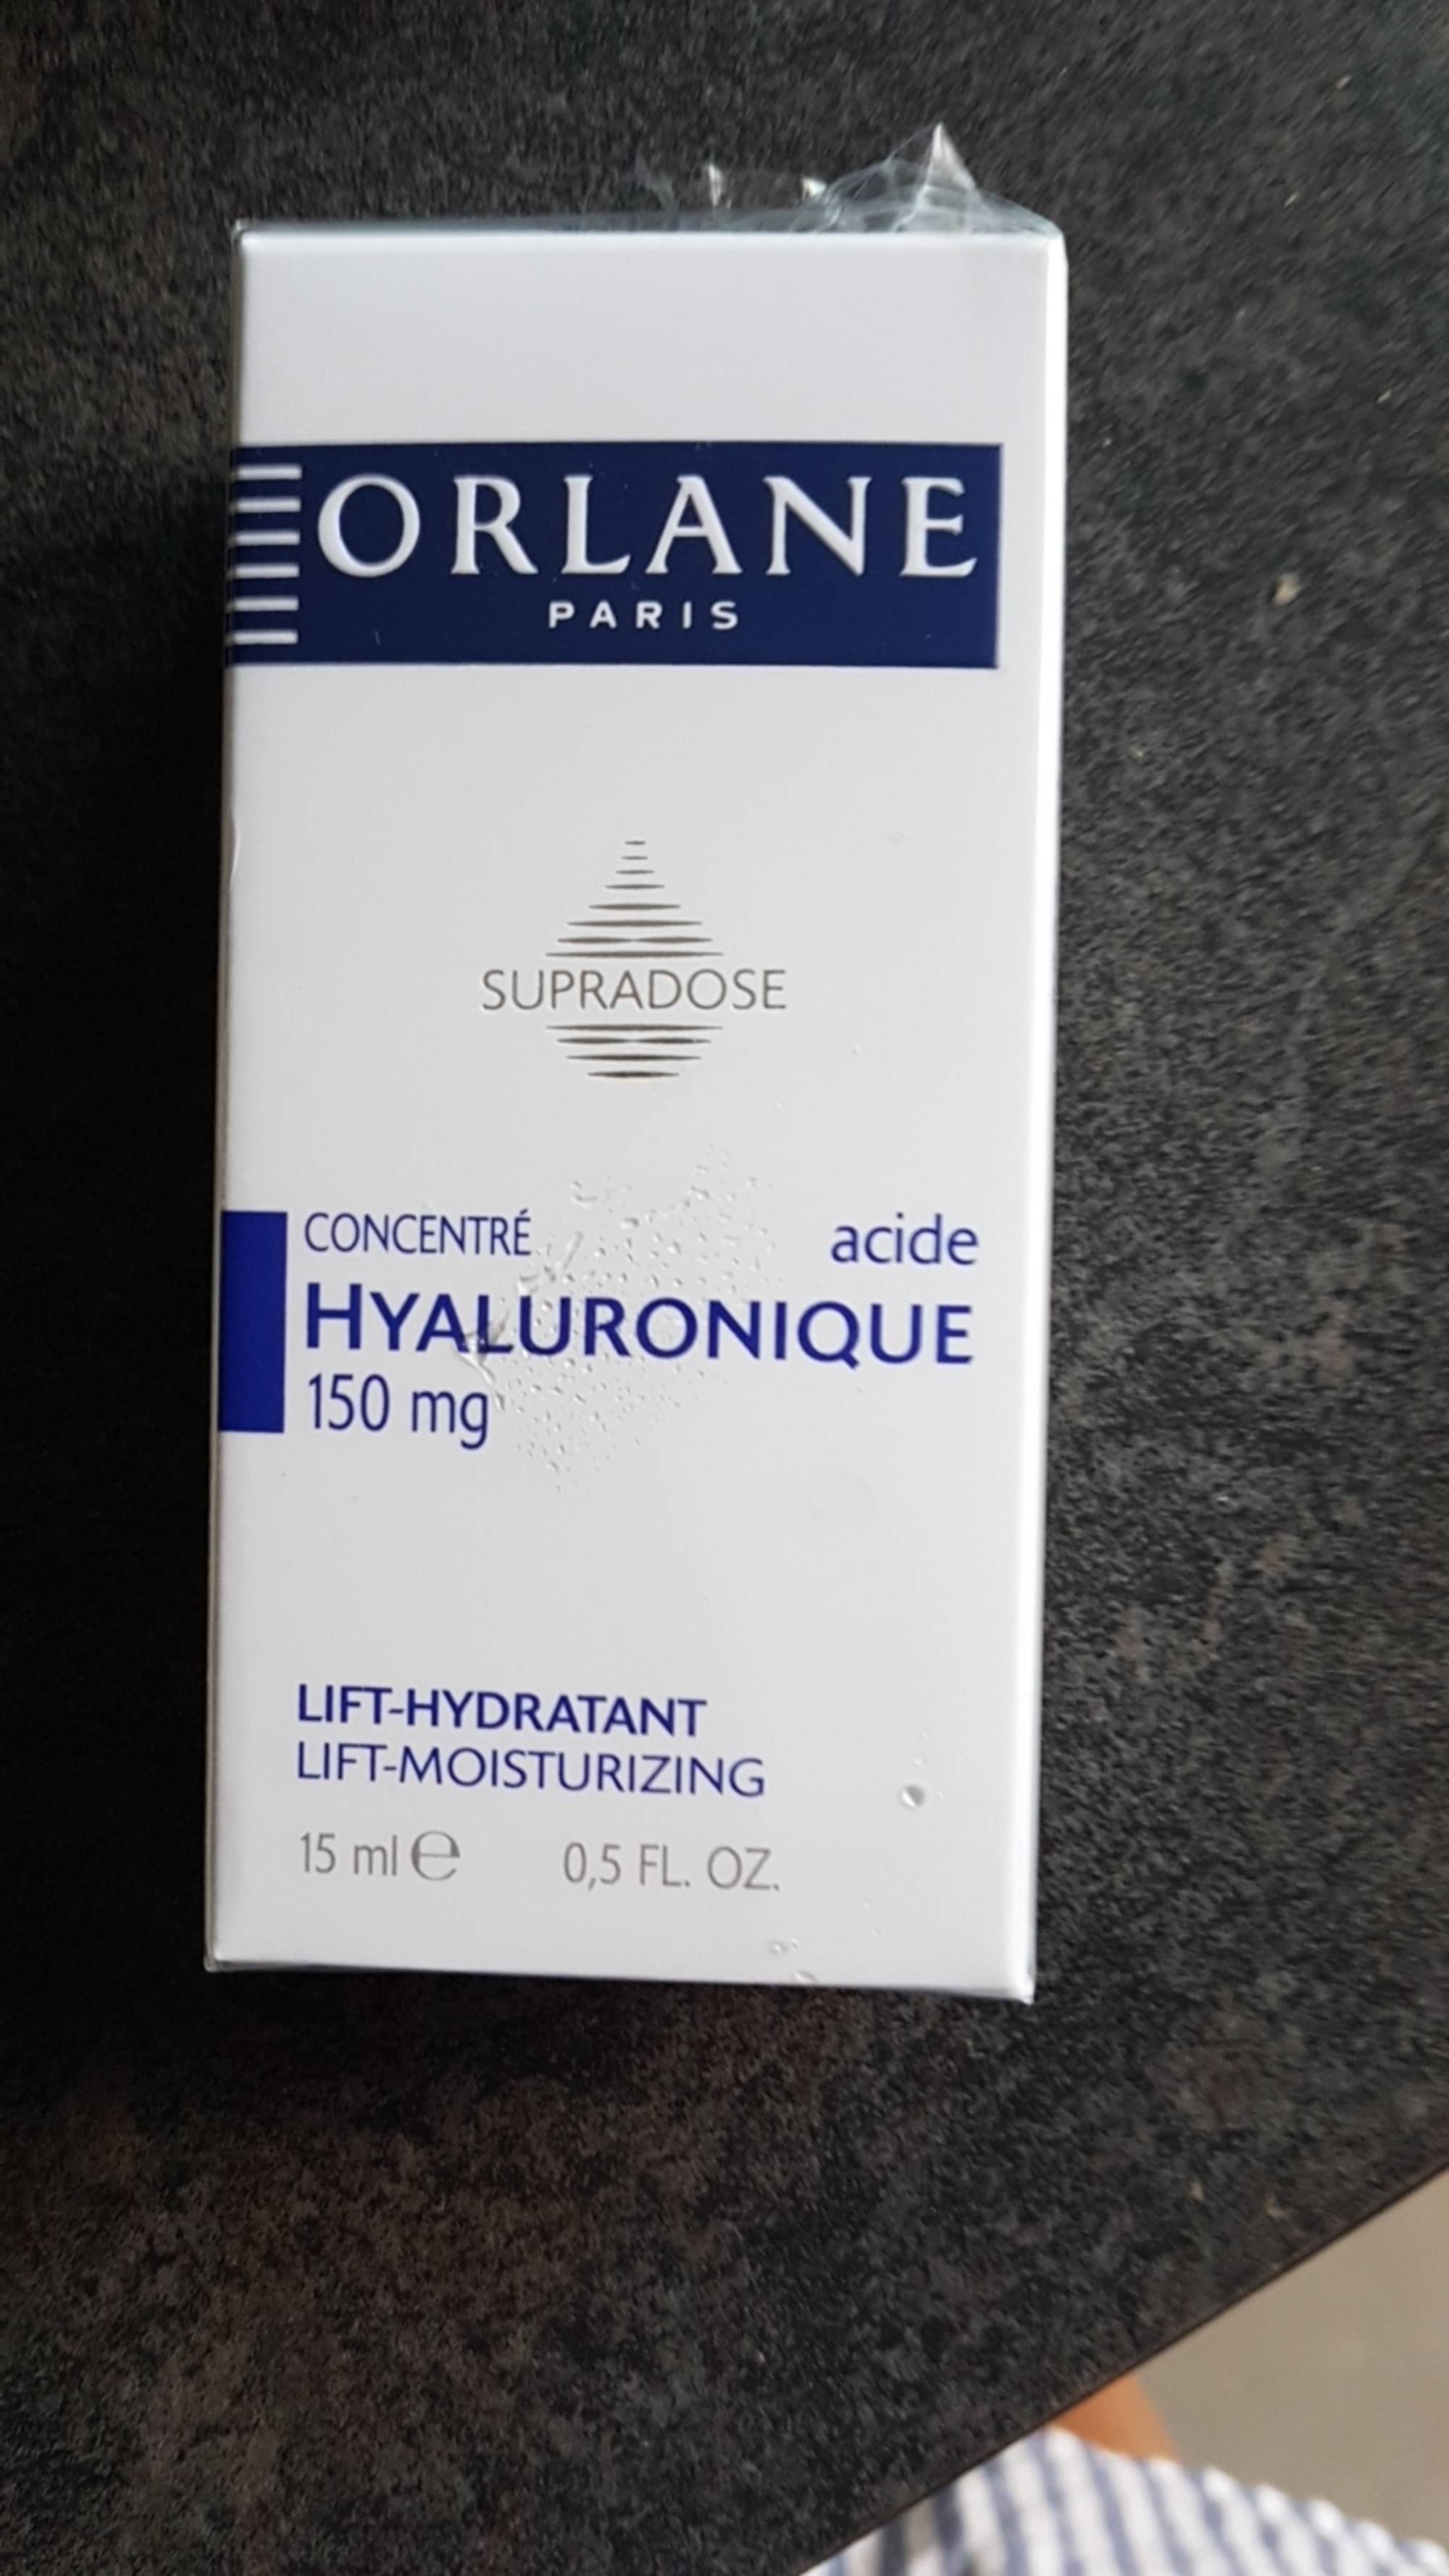 ORLANE - Concentré hyaluronique - Lift hydratant